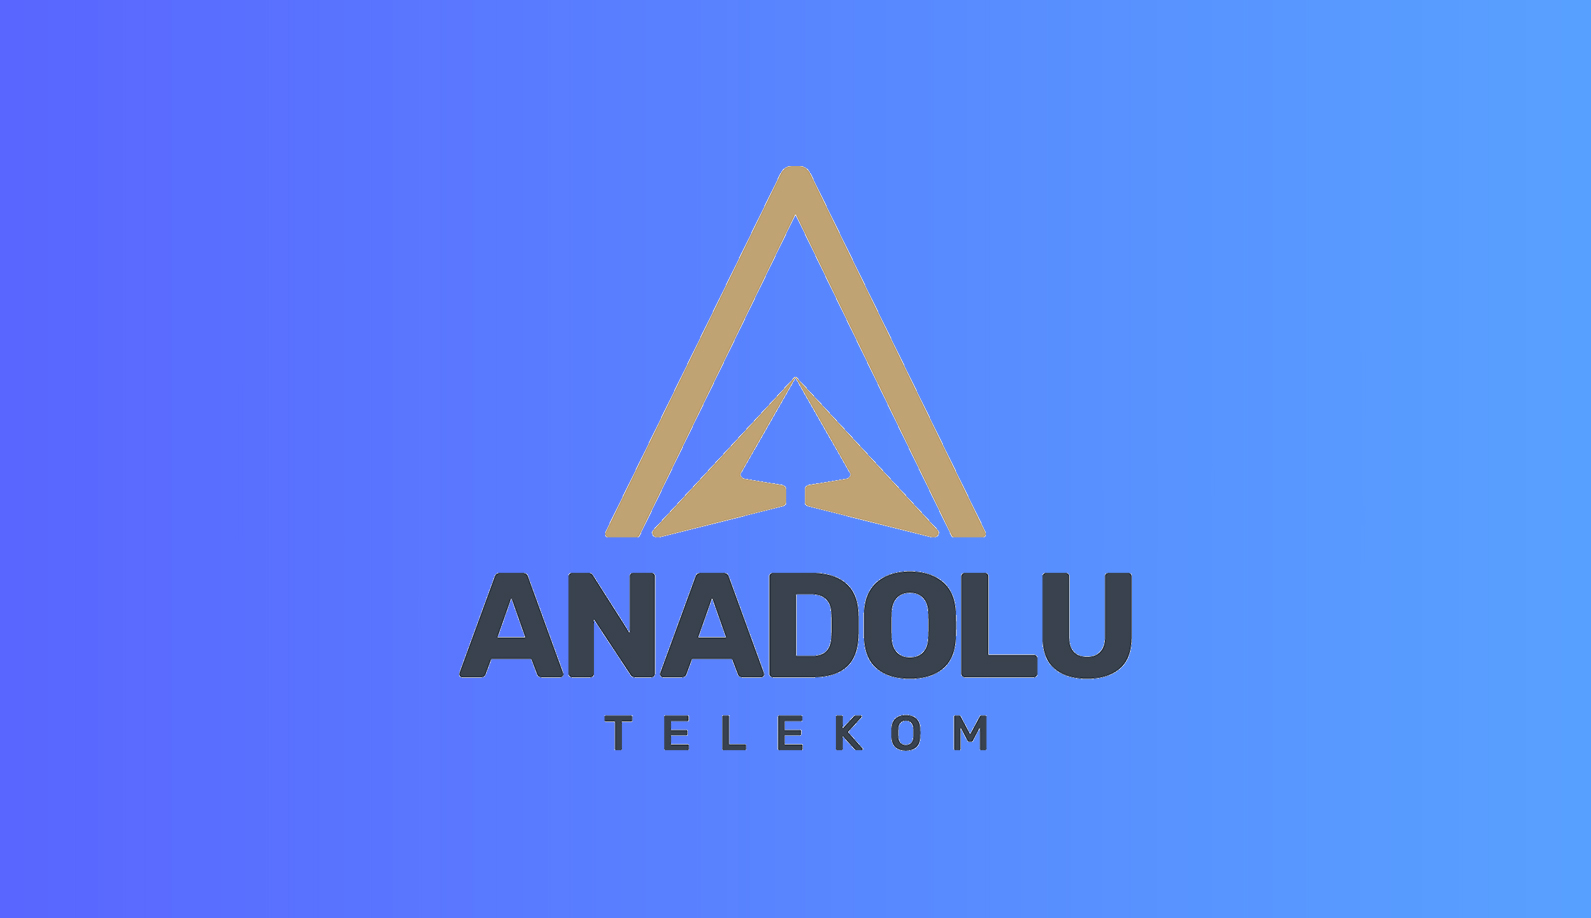 Anadolu Telekom